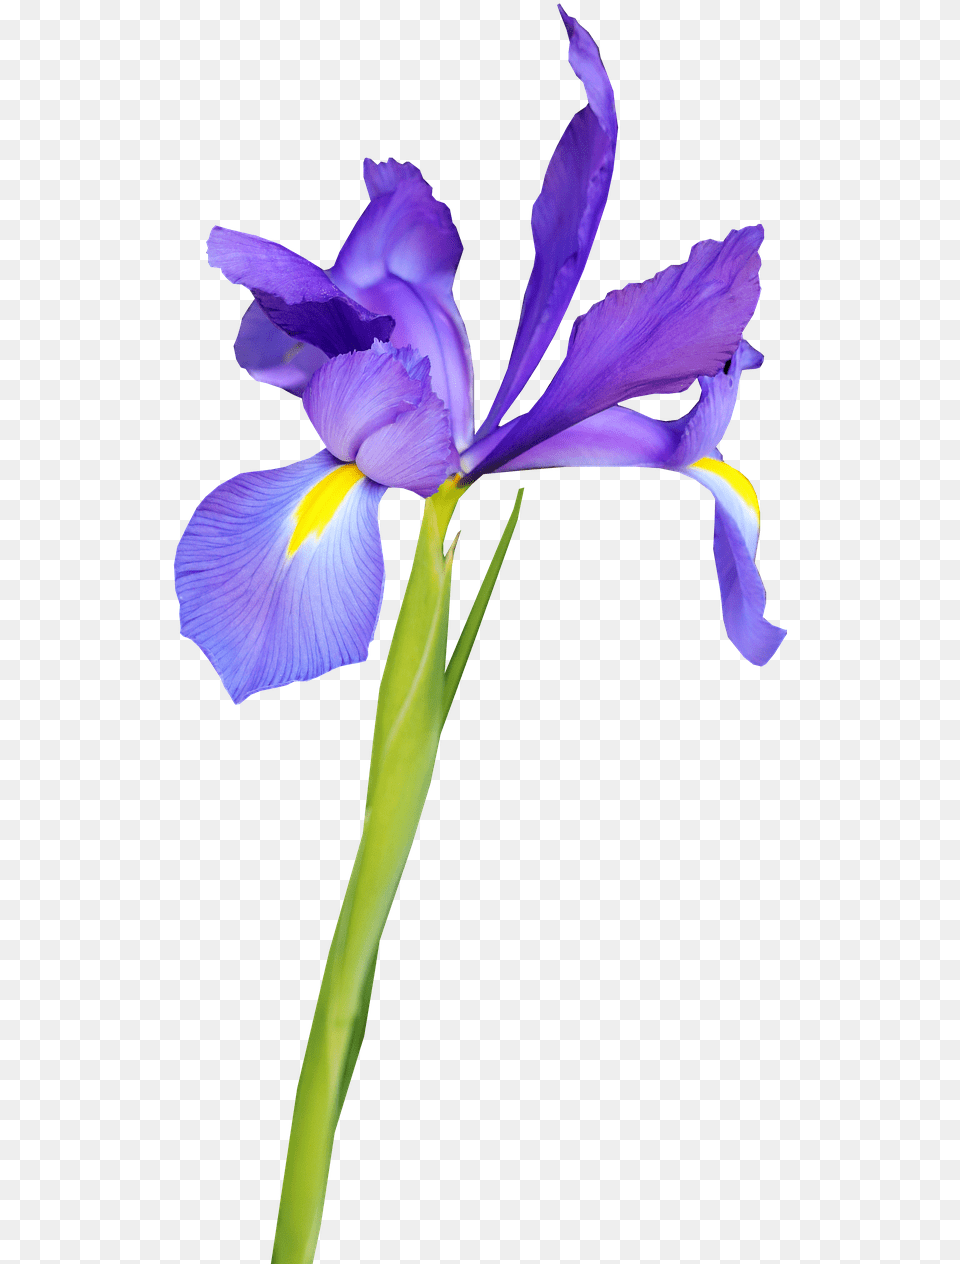 Flower Blue Iris Flor De Iris, Plant, Petal, Purple Free Png